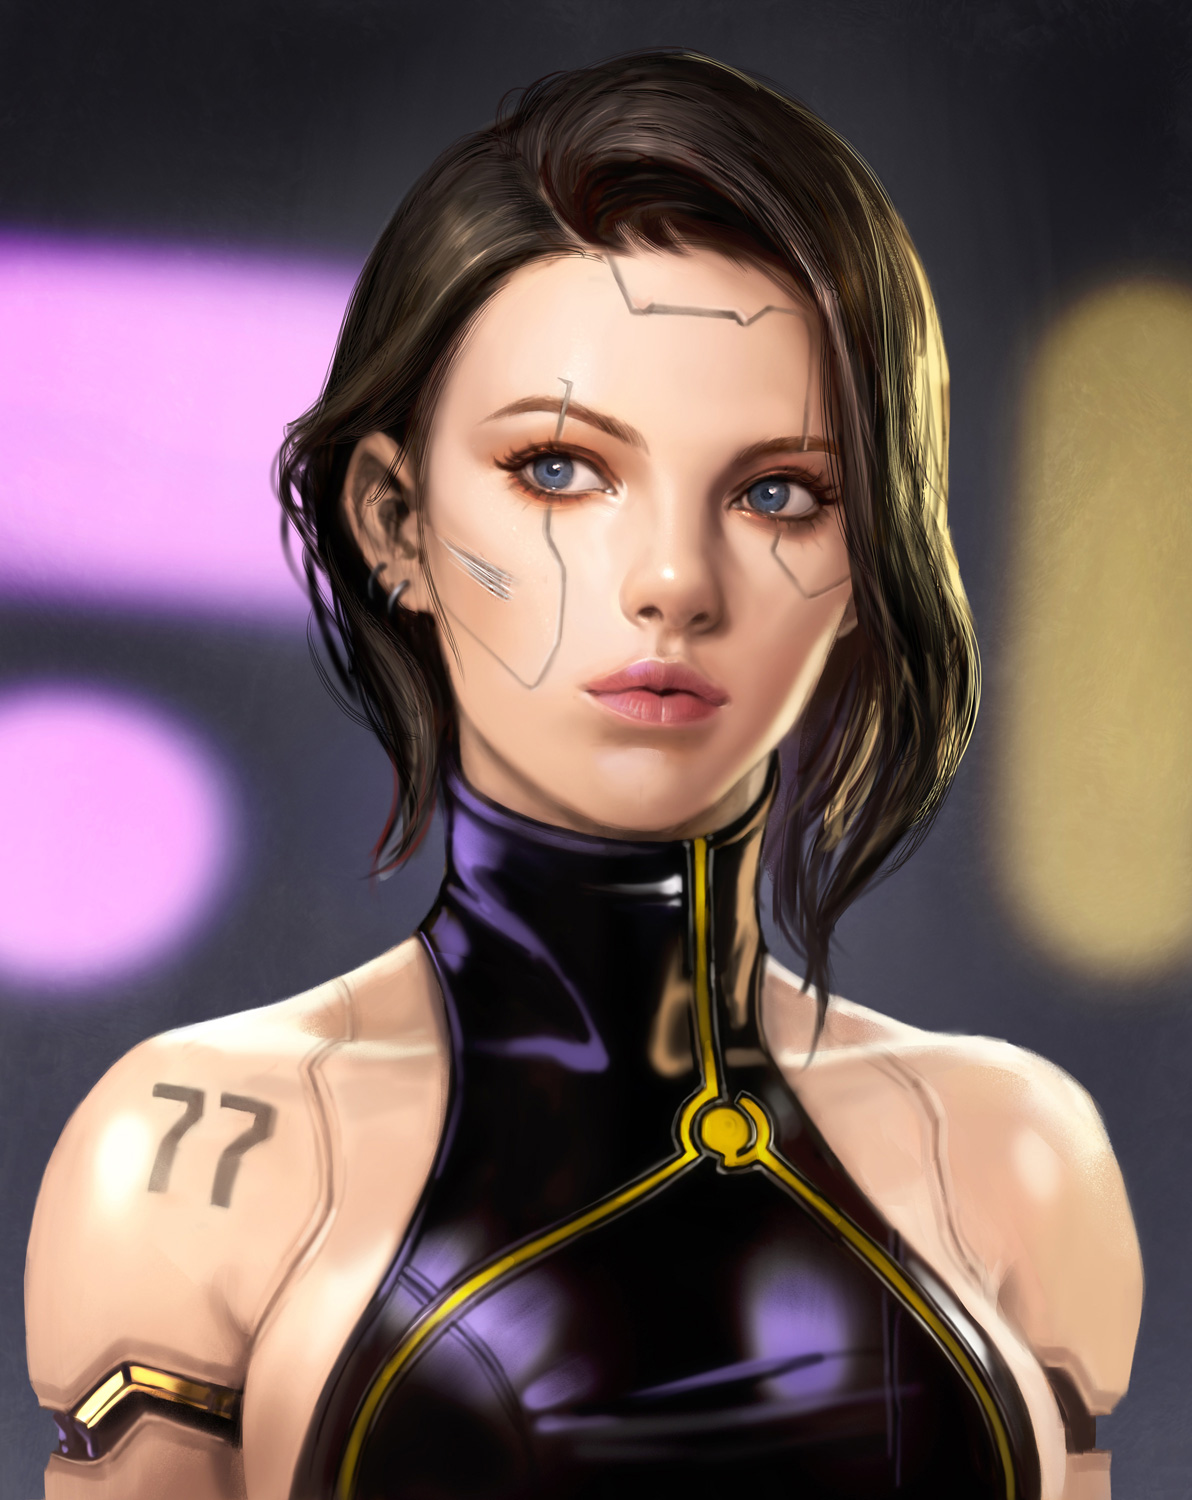 Cyberpunk girl by krzychumen on DeviantArt